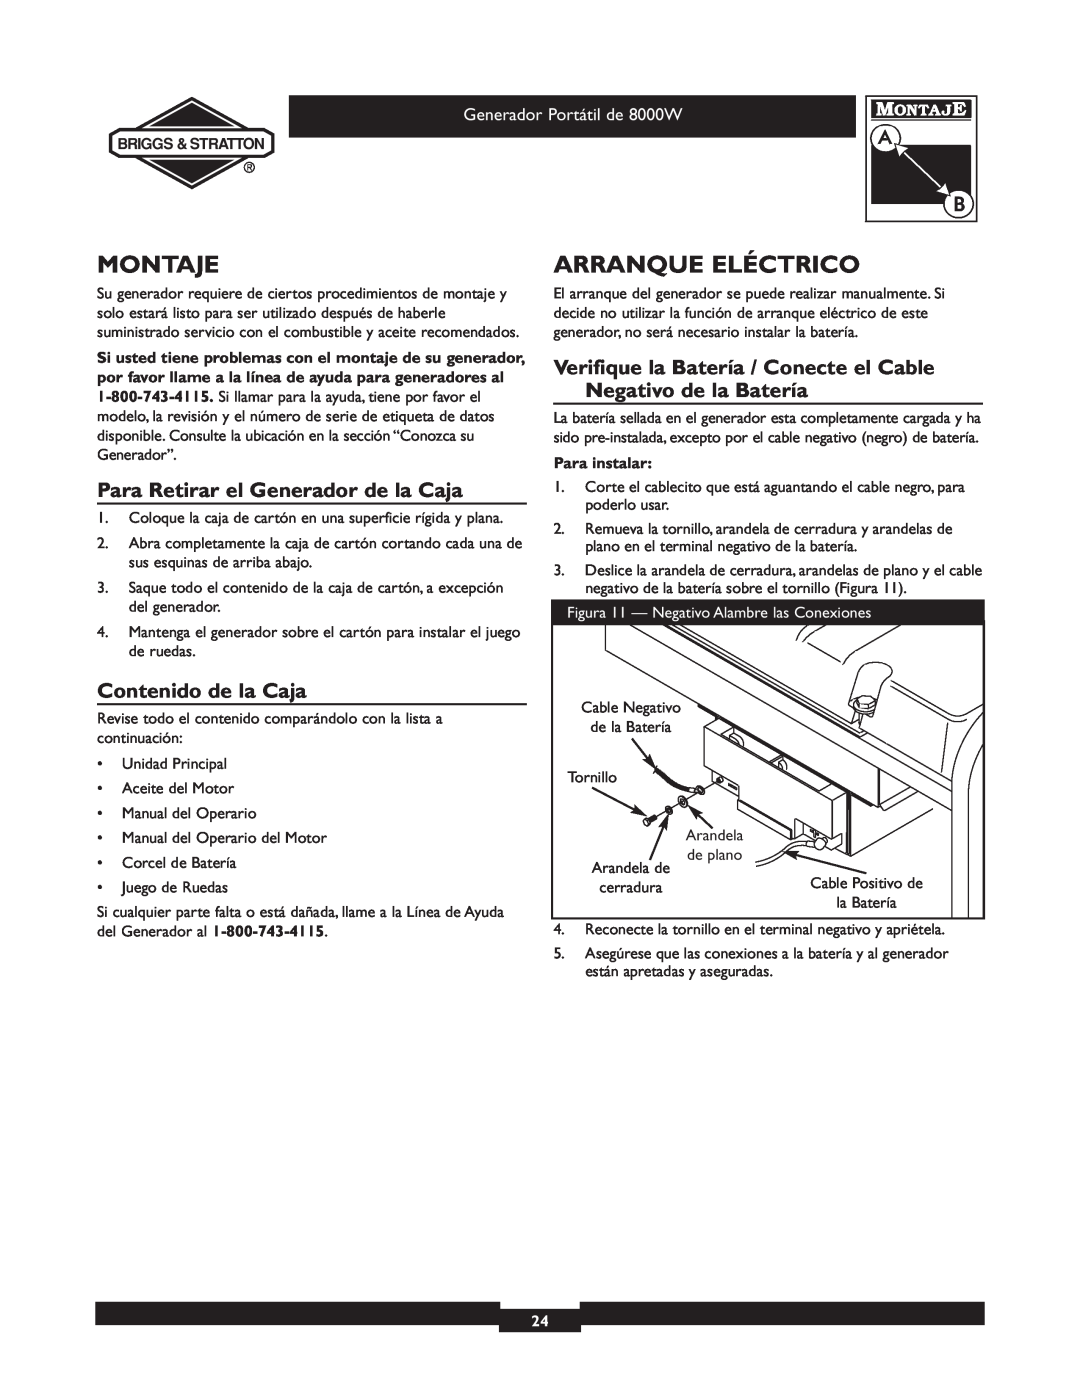 Briggs & Stratton 030210-2 manual Montaje, Arranque Eléctrico, Para Retirar el Generador de la Caja, Contenido de la Caja 